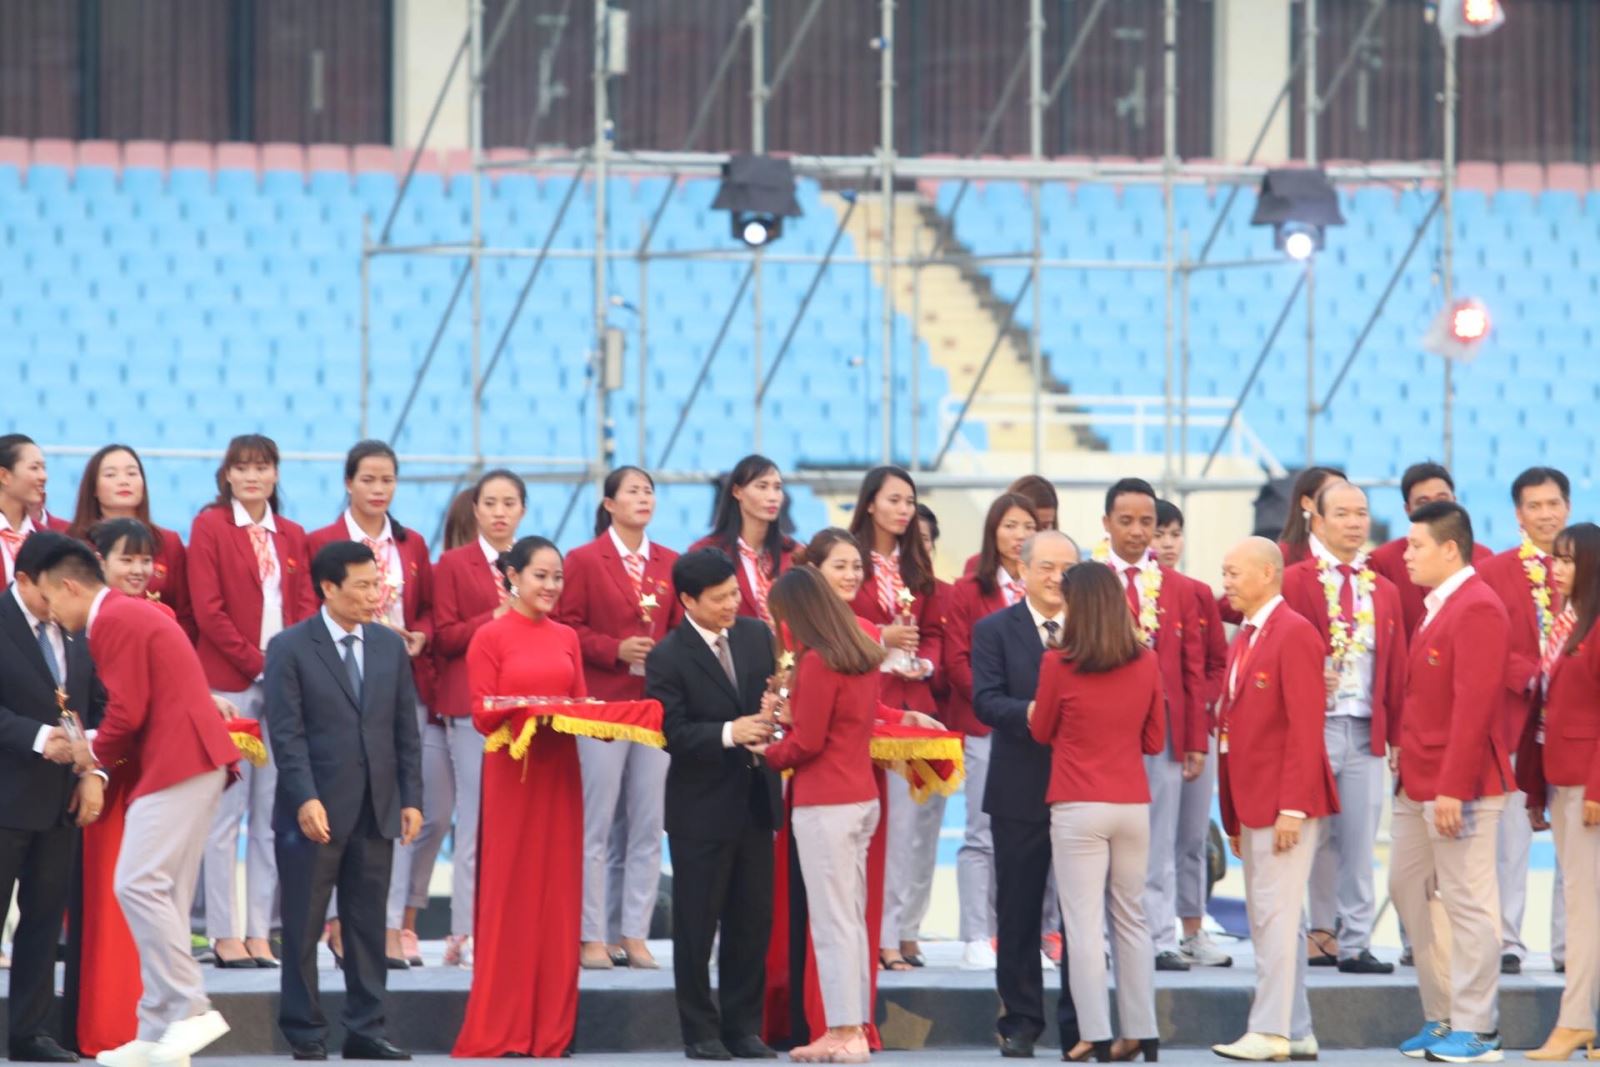 Tại Lễ vinh danh, 50 VĐV có thành tích xuất sắc tại Asiad 2018 đã được trao tặng kỷ niệm chương “Những ngôi sao vàng”, có khắc chữ “Cảm ơn niềm tự hào Việt Nam”.